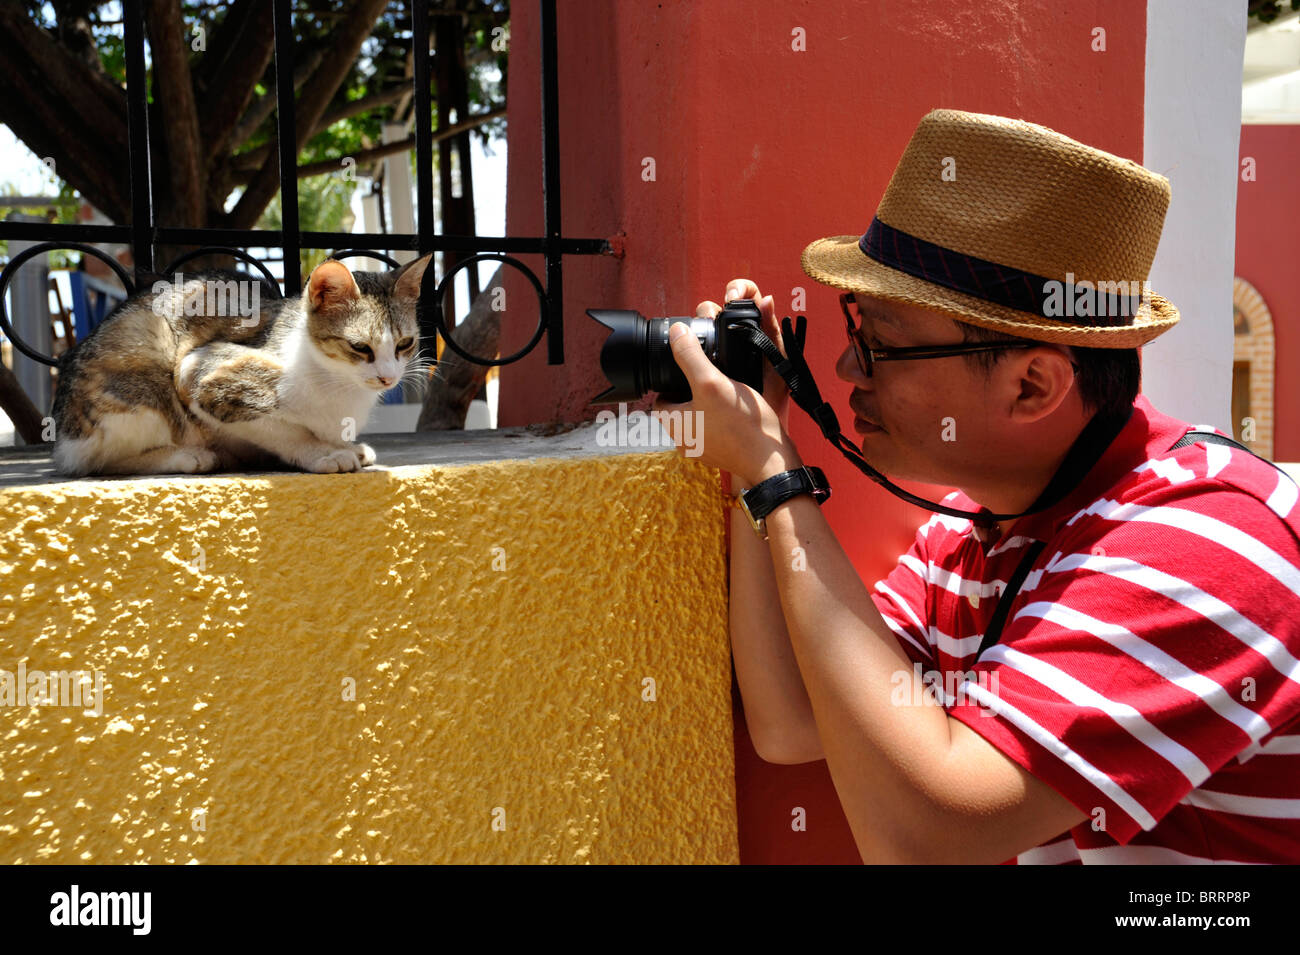 Turista giapponese di fotografare un gatto nella capitale città di Fira sull'isola greca di Santorini nelle Cicladi Foto Stock